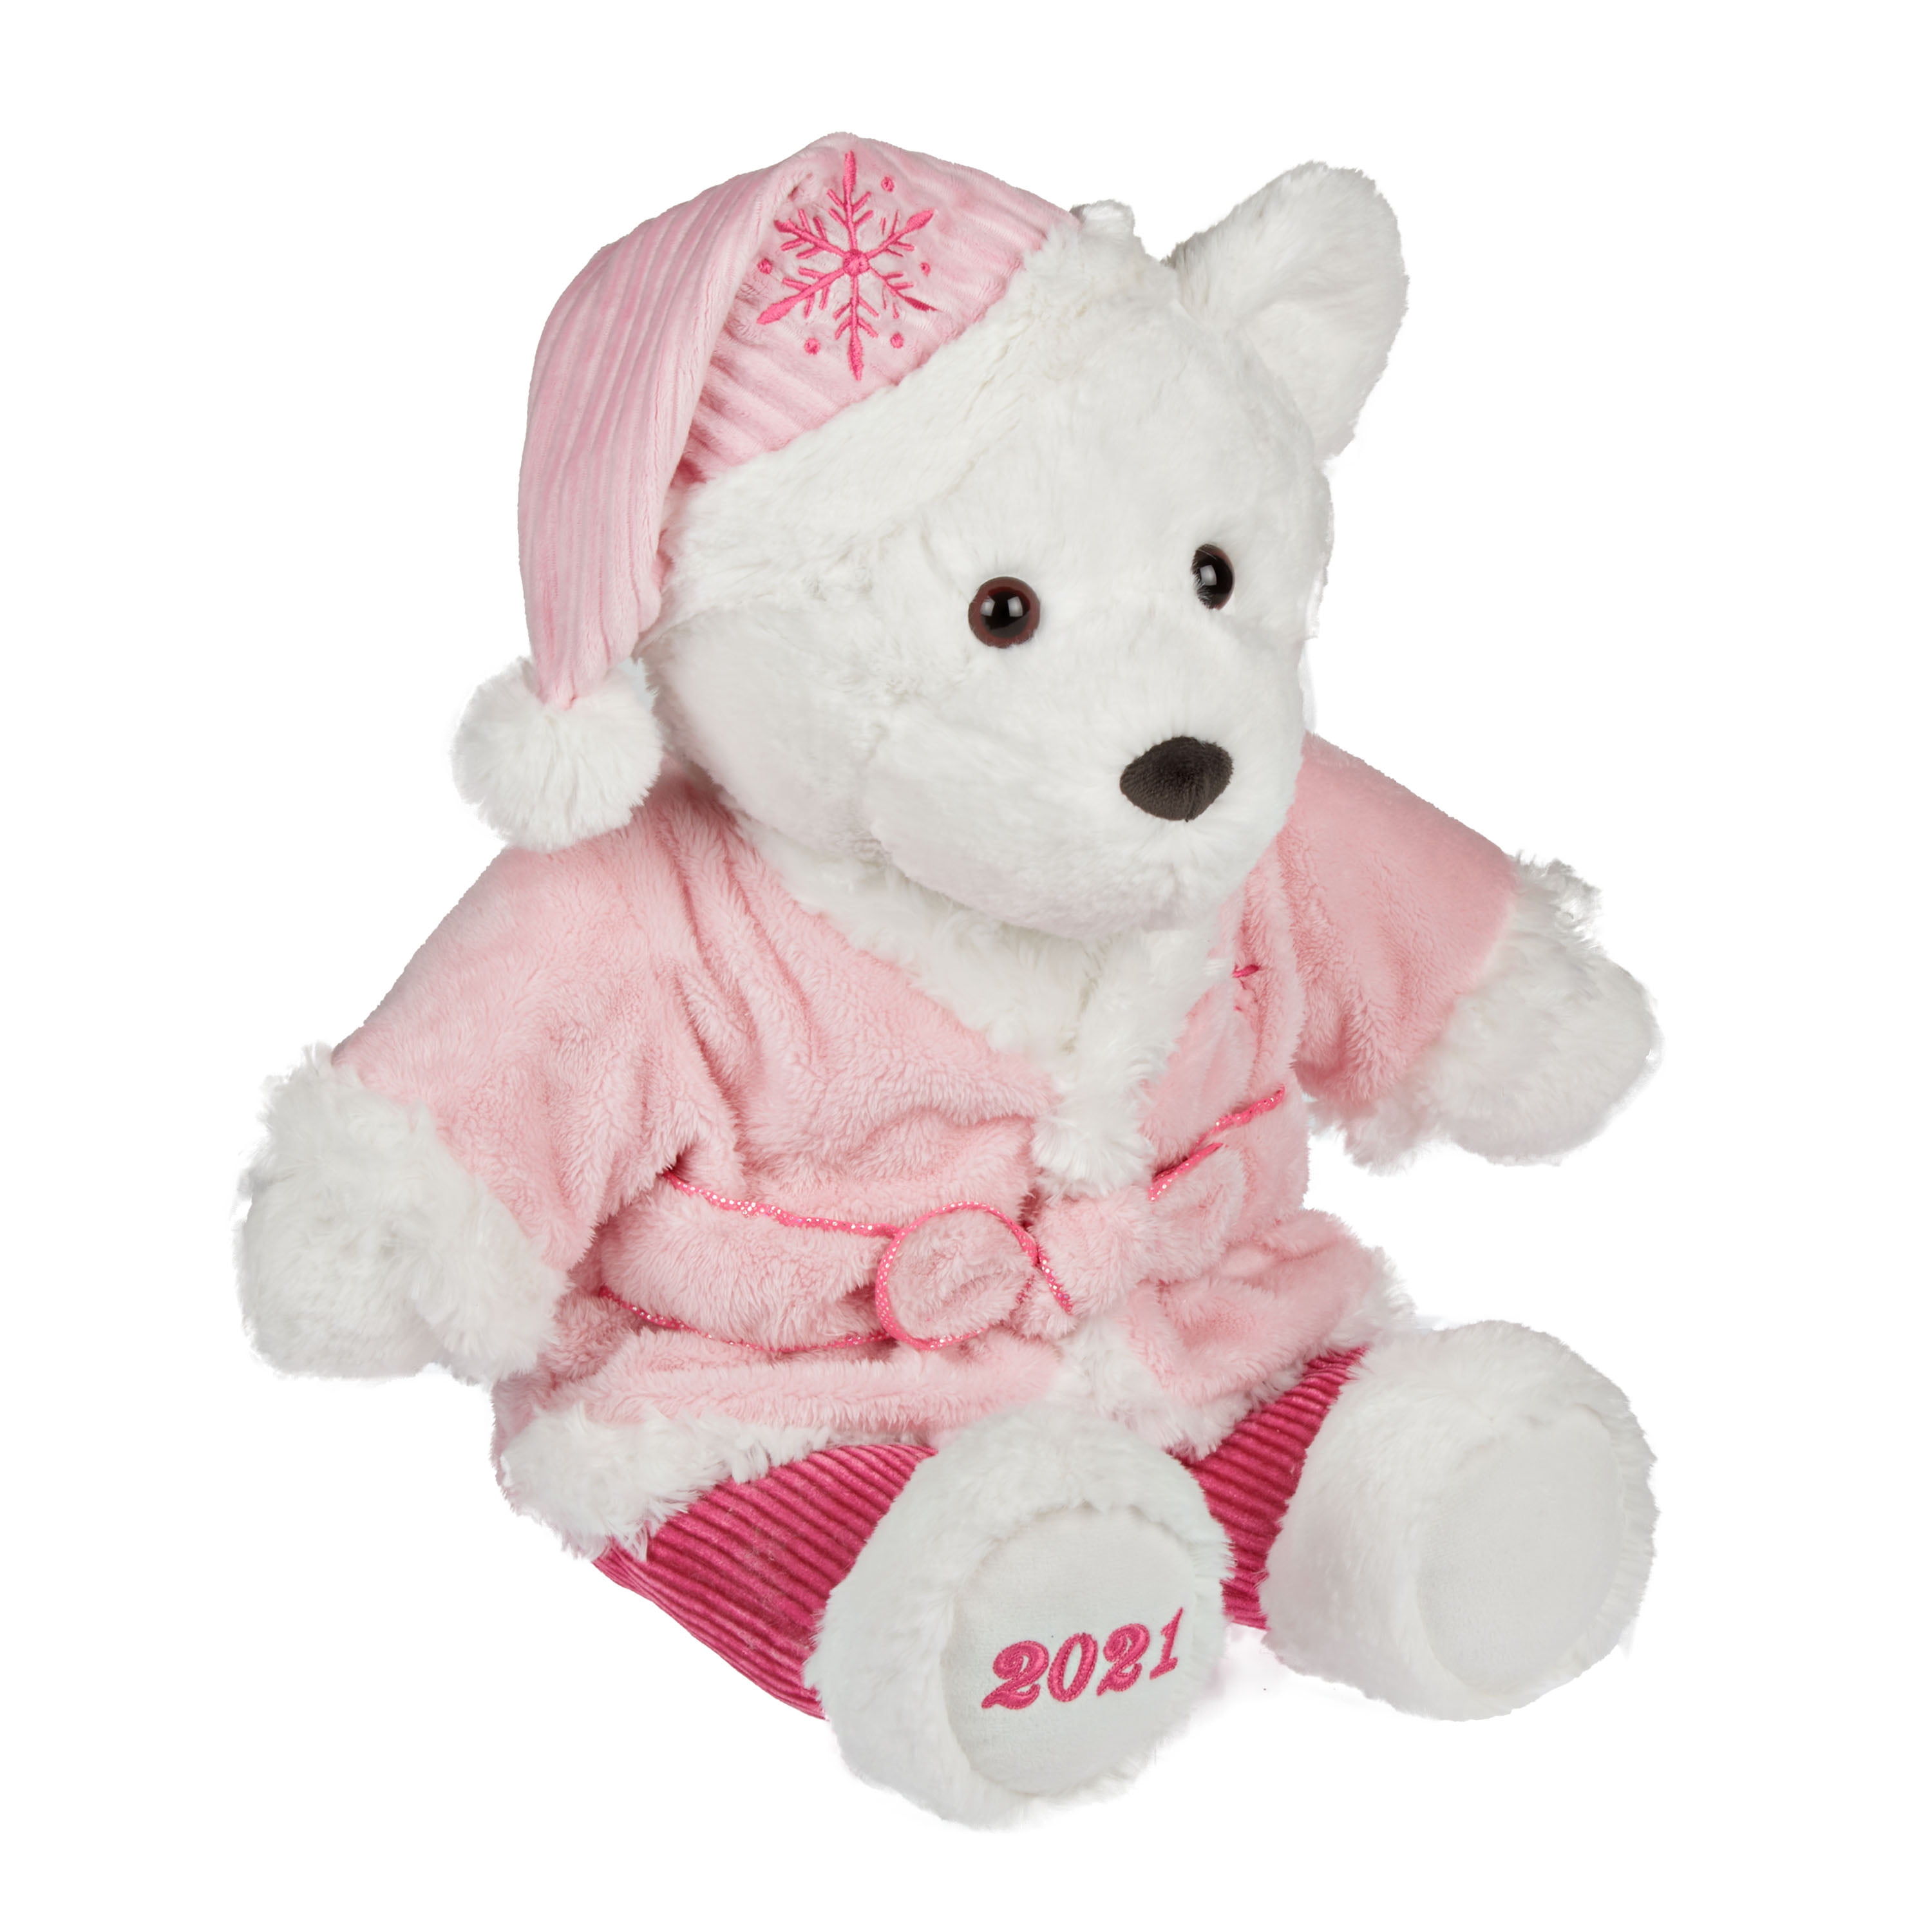 Oitscute Teddy Bear with Pink Dress Bonnet Stuffed Animal Soft Plush Toy  17” New